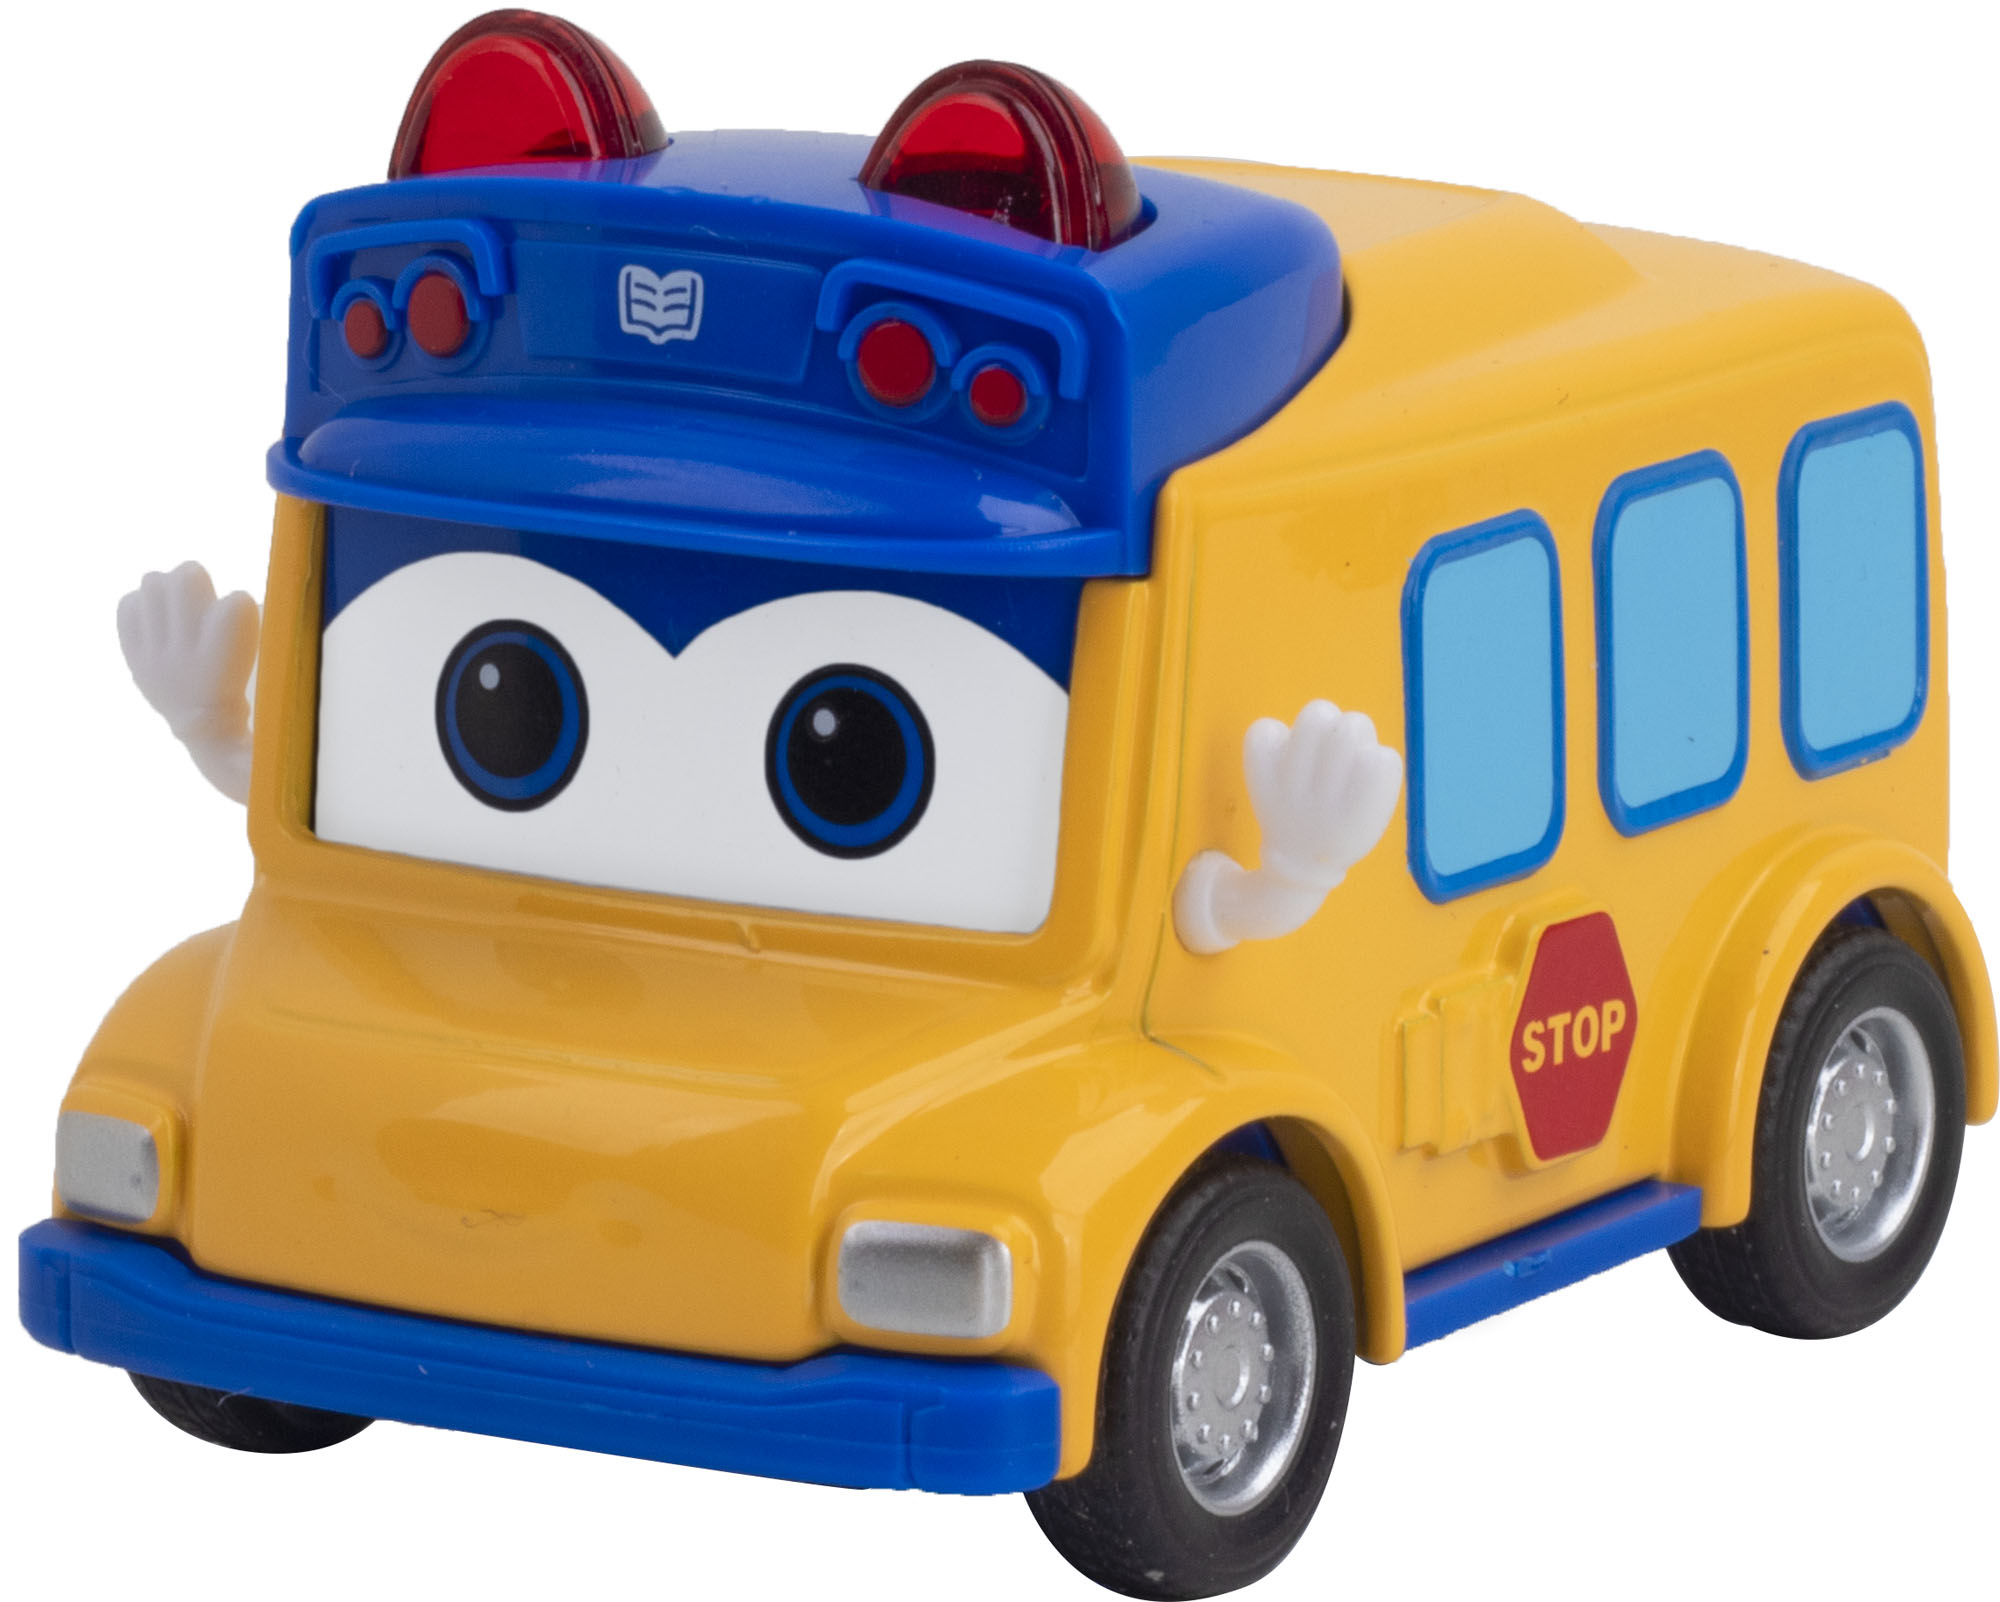 Инерционная машинка GoGoBus с металлическим корпусом, Школьный автобус Гордон